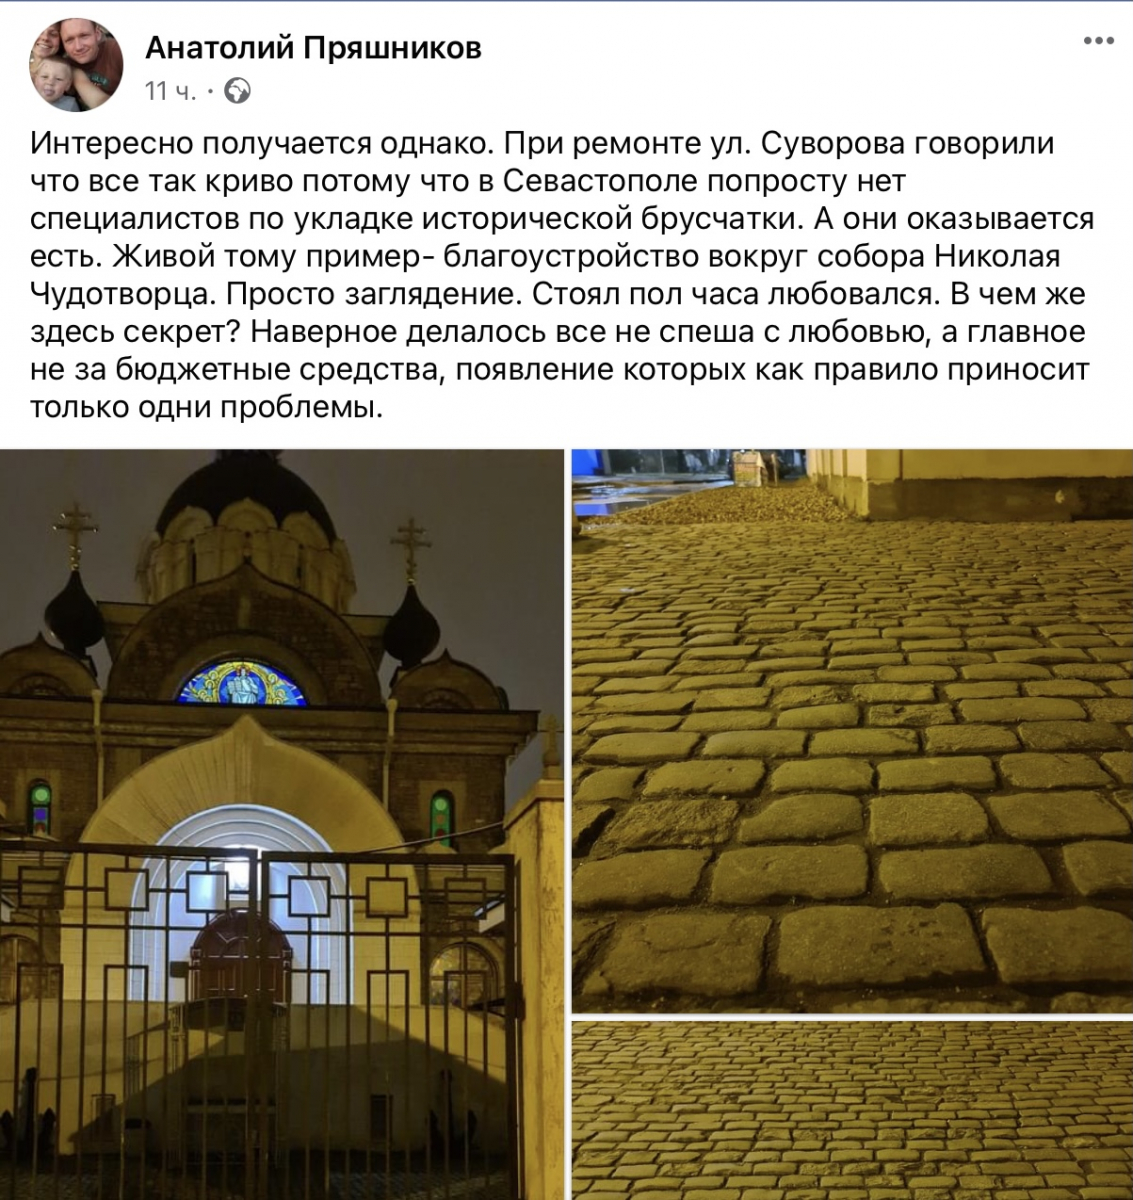 брусчатка, Никольский храм, Анатолий Пряшников 